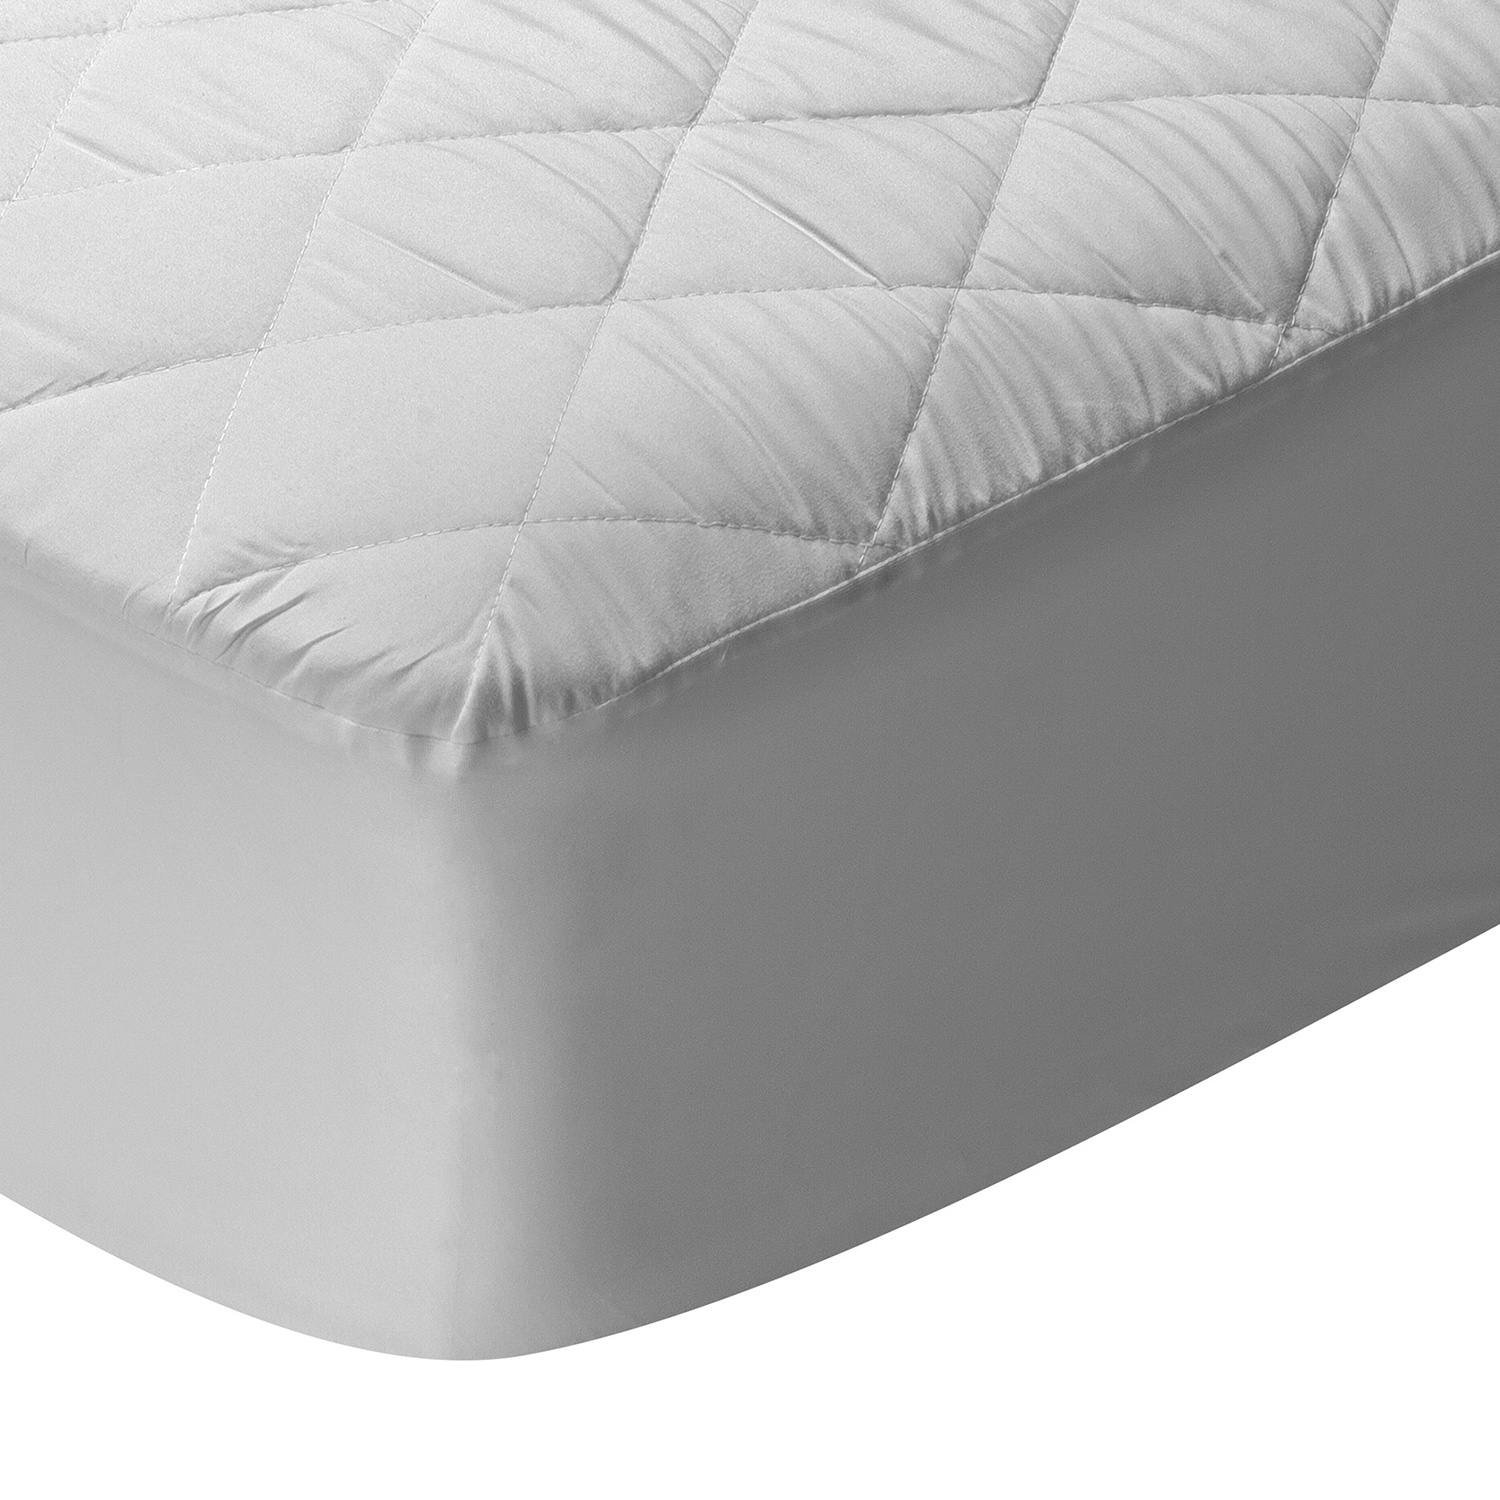 Protector de colchón antialérgico acolchado de microfibra 150x200 cm